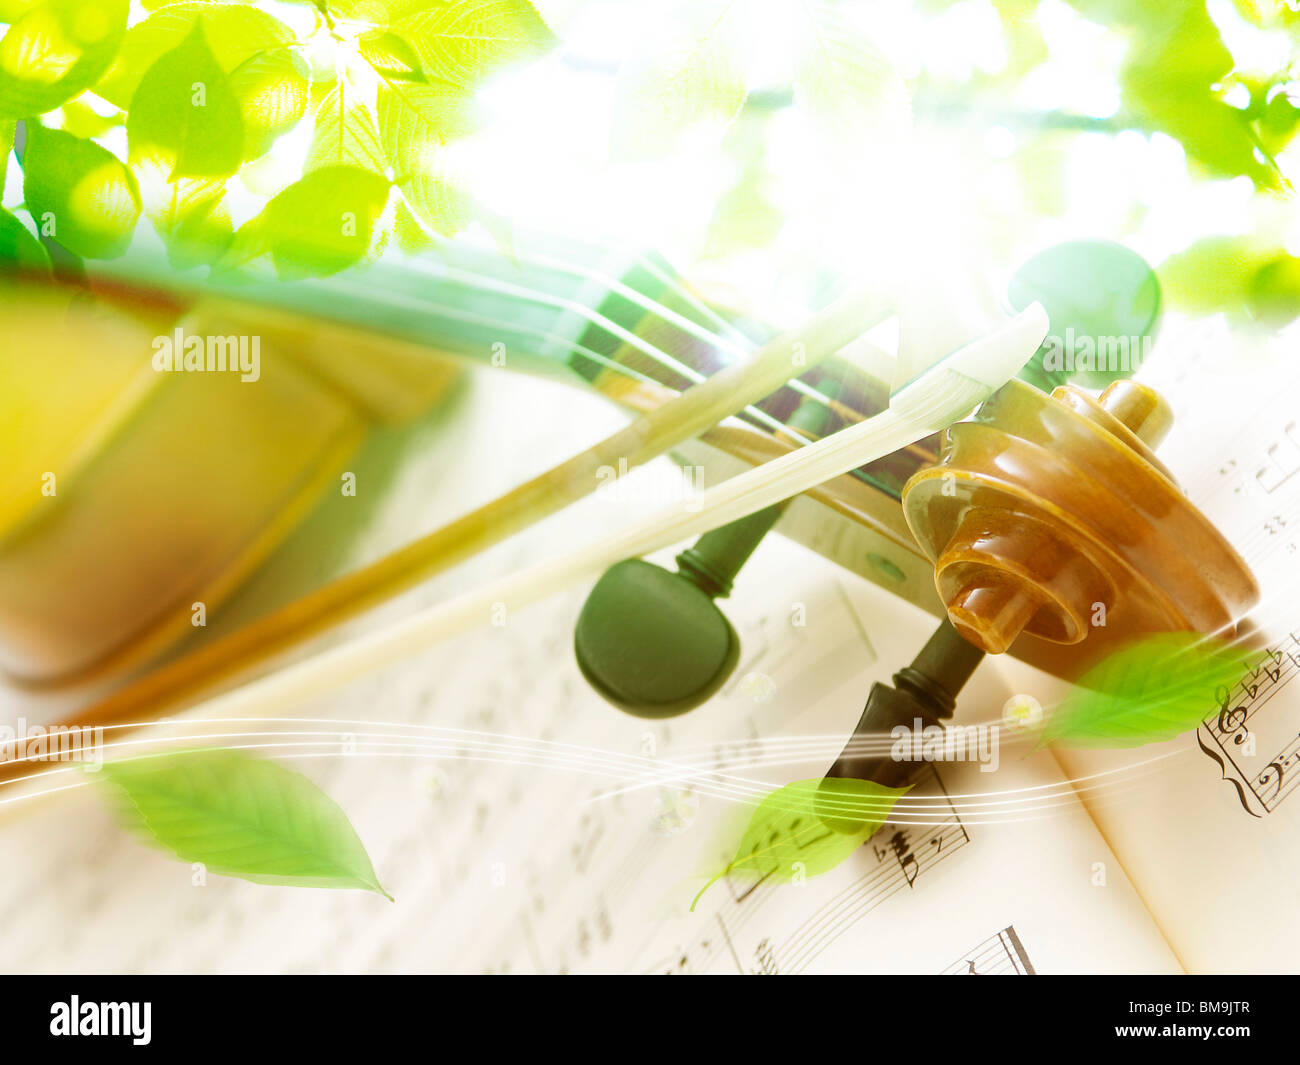 Immagine di foglie e violino, computer graphic Foto Stock